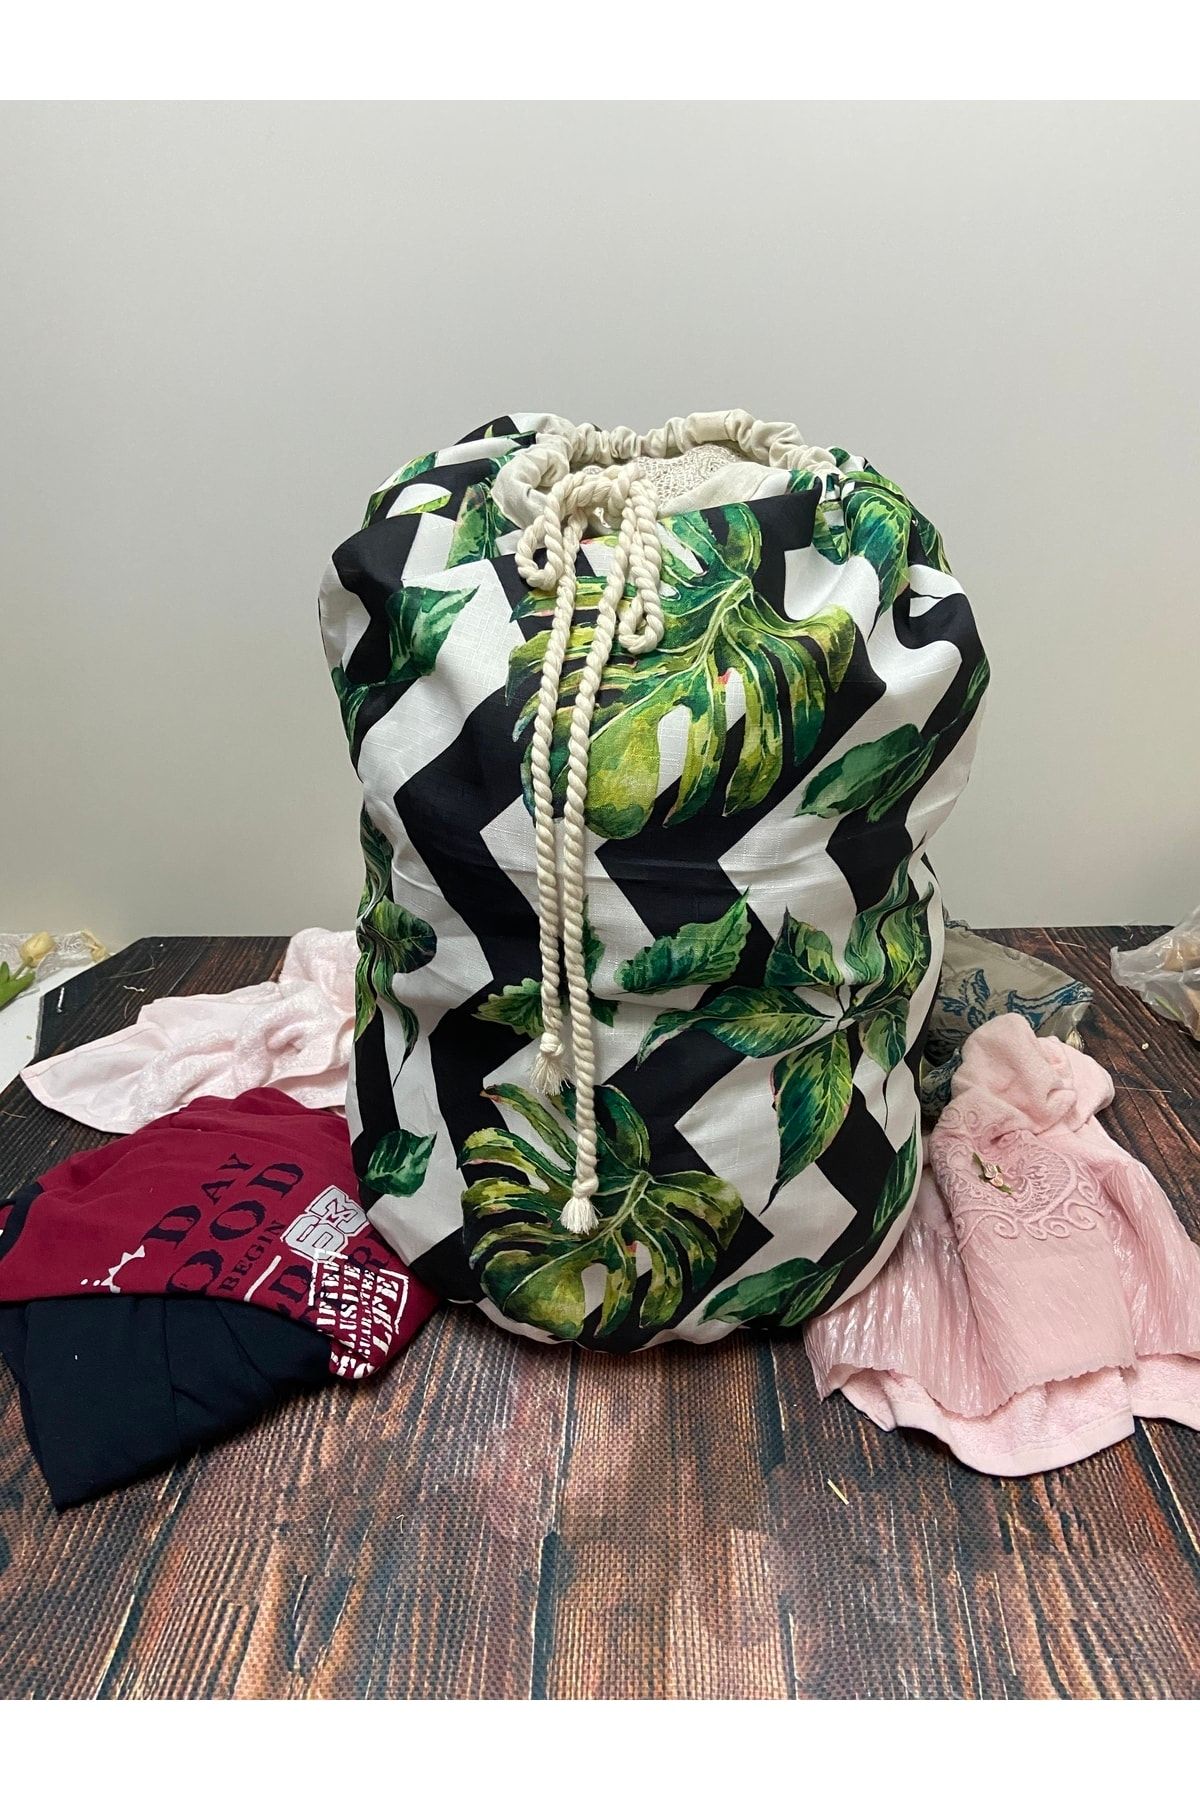 Çt Çeyizci Tekstil Çamaşır Torbası, Kirli Banyo Torbası, Düzenleyici Torba - Astarlı - Yeşil Yapraklı